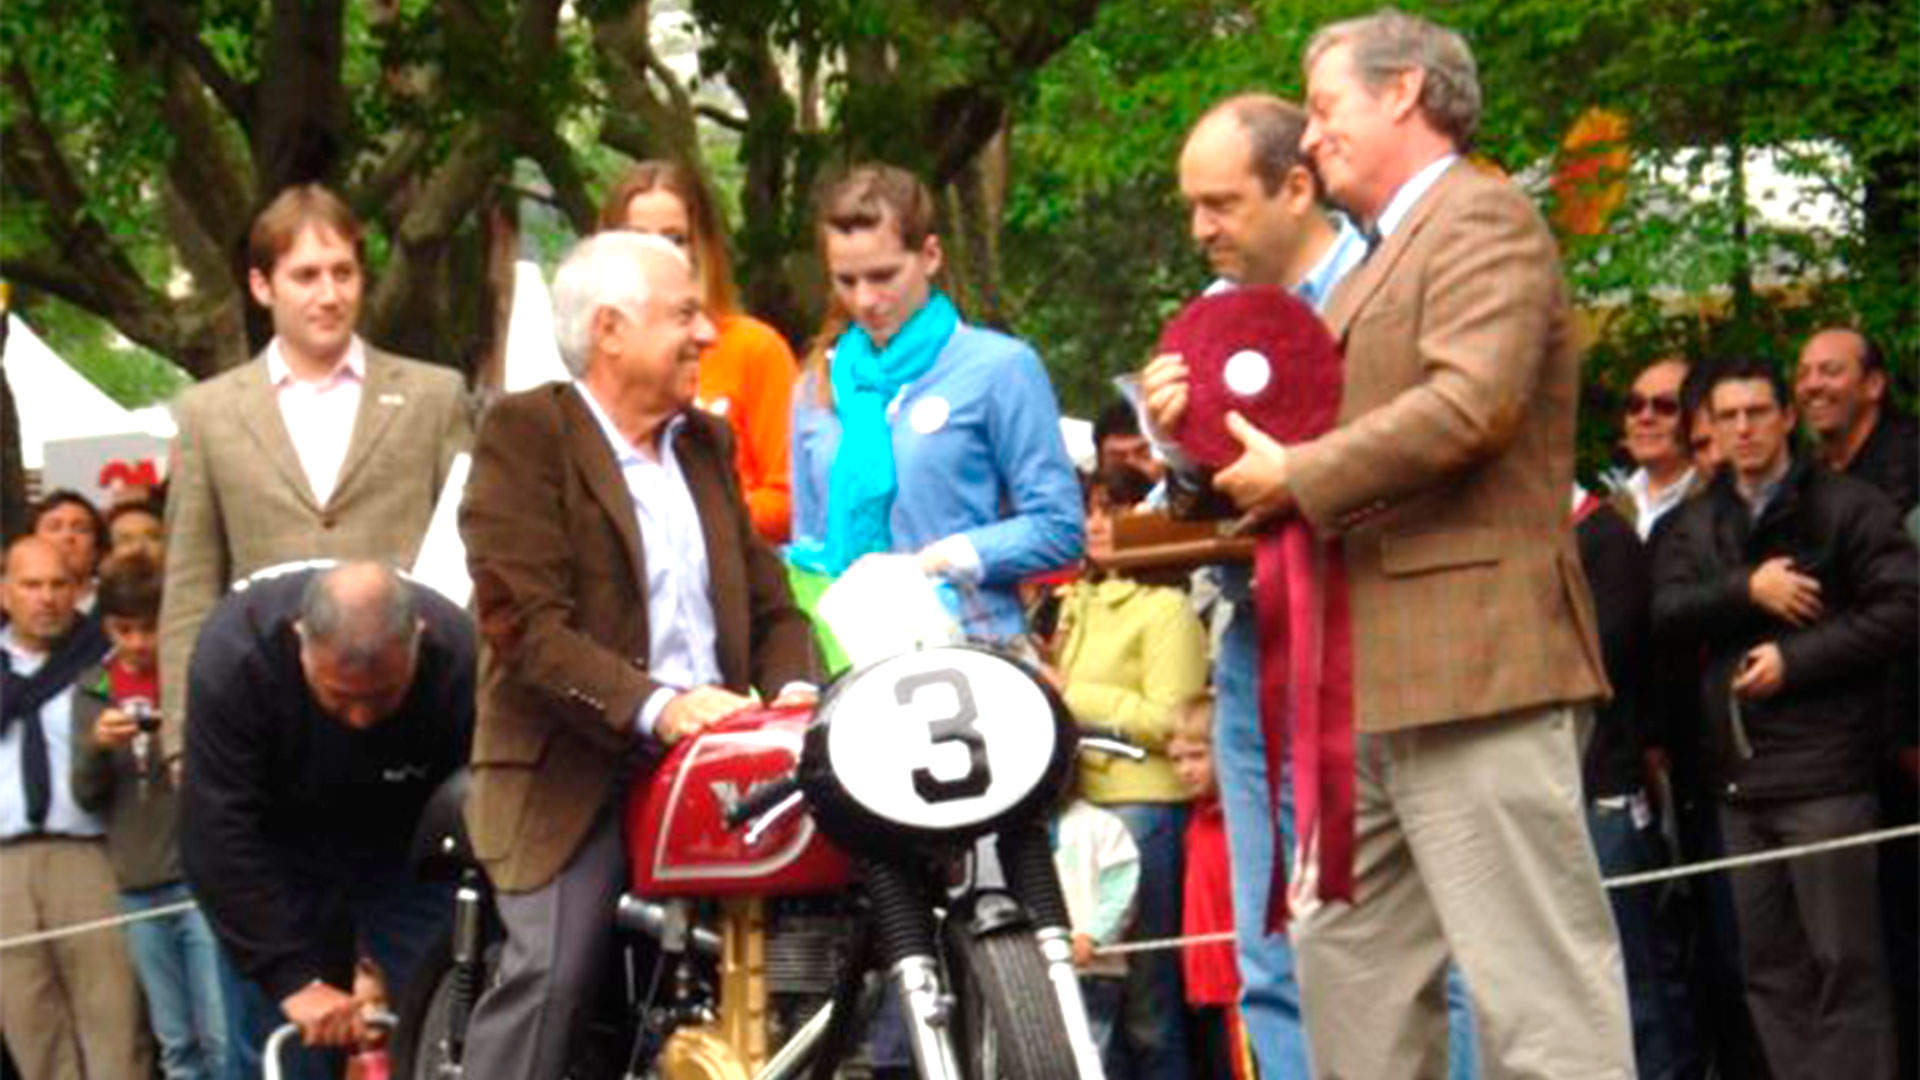 Caldarella sobre la réplica Matchless G50 1961 de 500 cm3. Fue en Autoclásica 2012 y la moto fue premiada (Gran Premioweb)